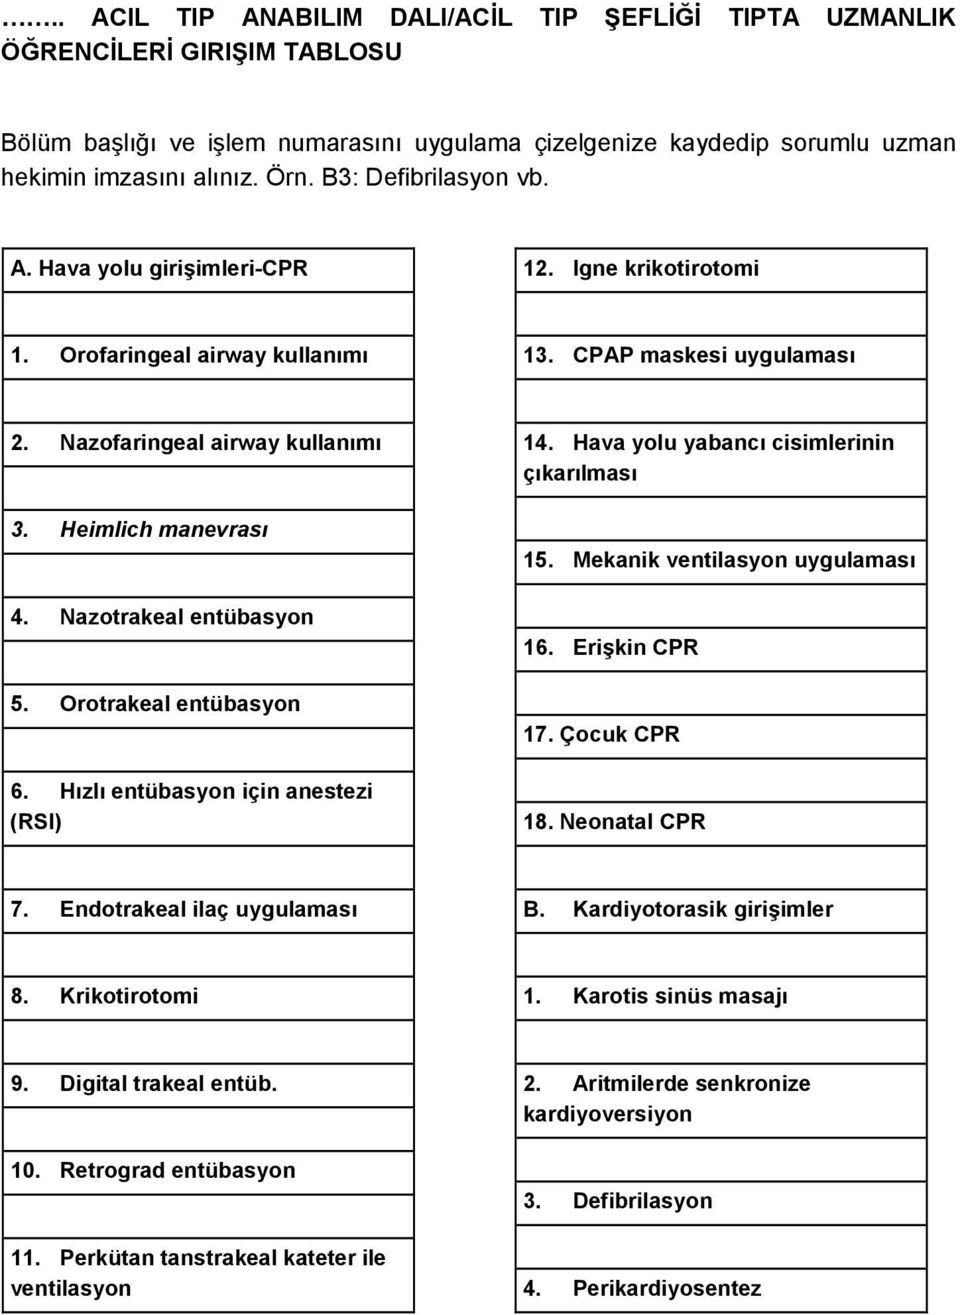 Nazotrakeal entübasyon 5. Orotrakeal entübasyon 6. Hızlı entübasyon için anestezi (RSI) 14. Hava yolu yabancı cisimlerinin çıkarılması 15. Mekanik ventilasyon uygulaması 16. Erişkin CPR 17.